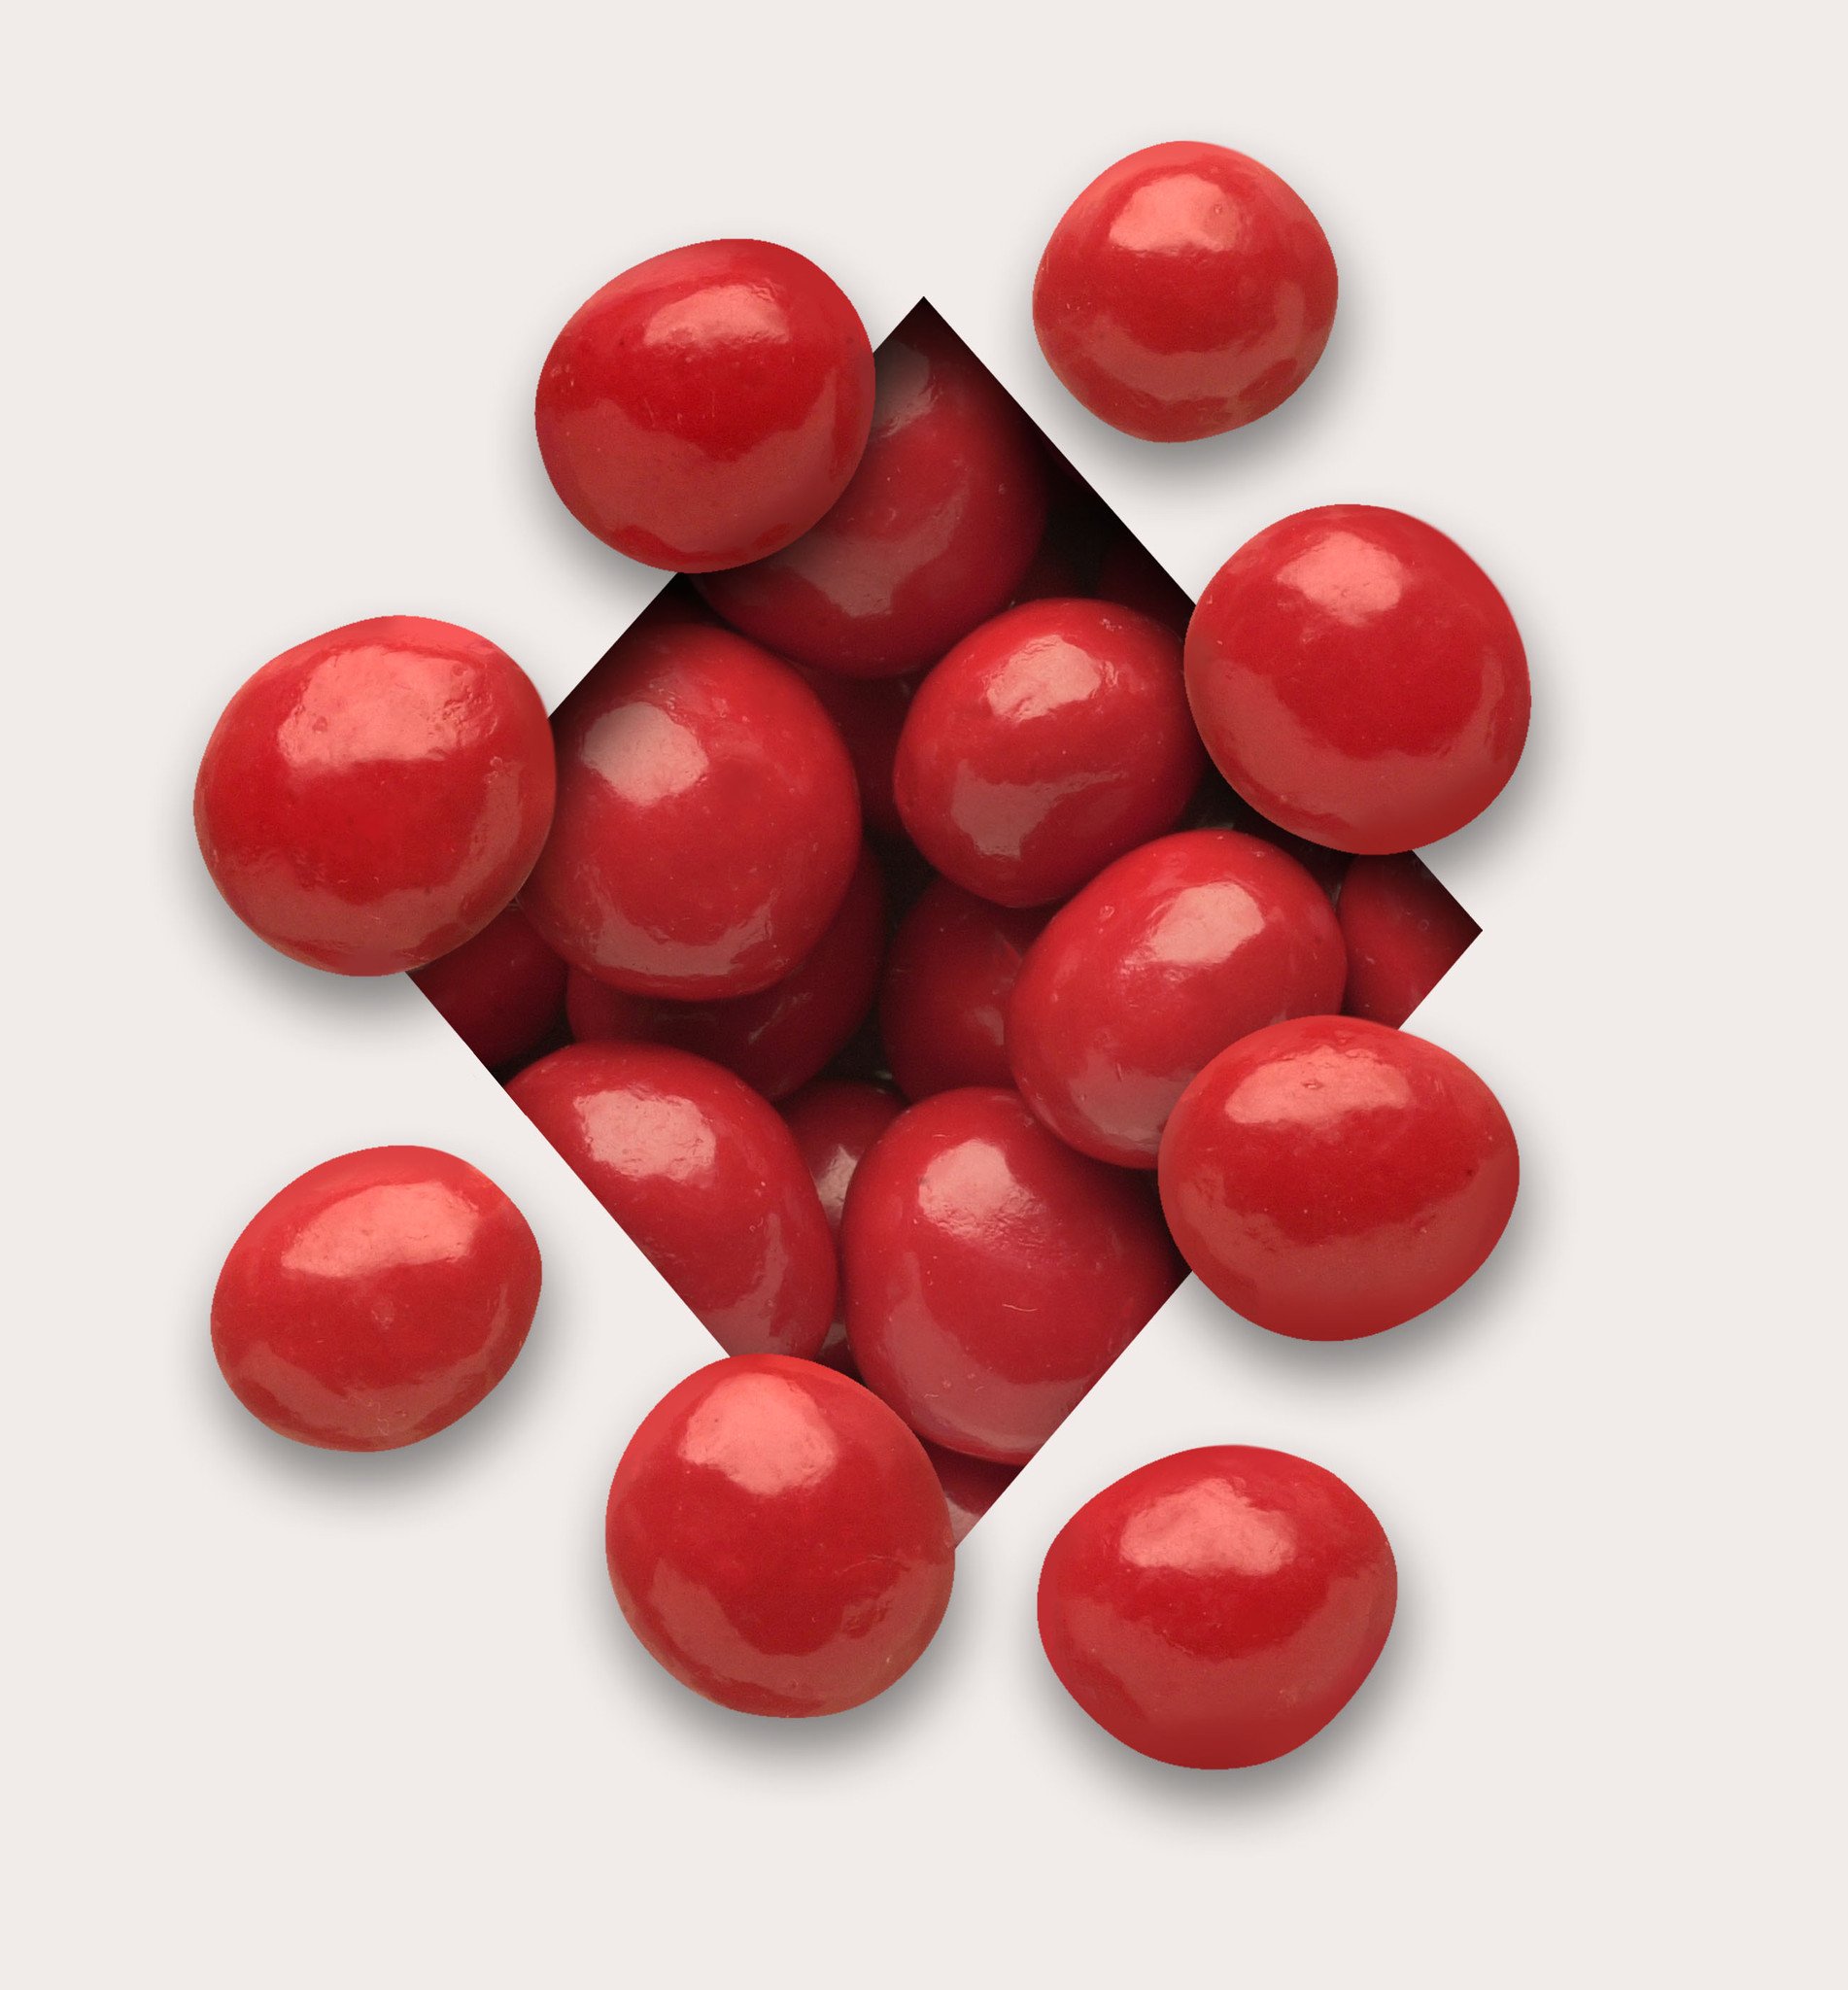 Pastel Red Cherries – Koppers Chocolate